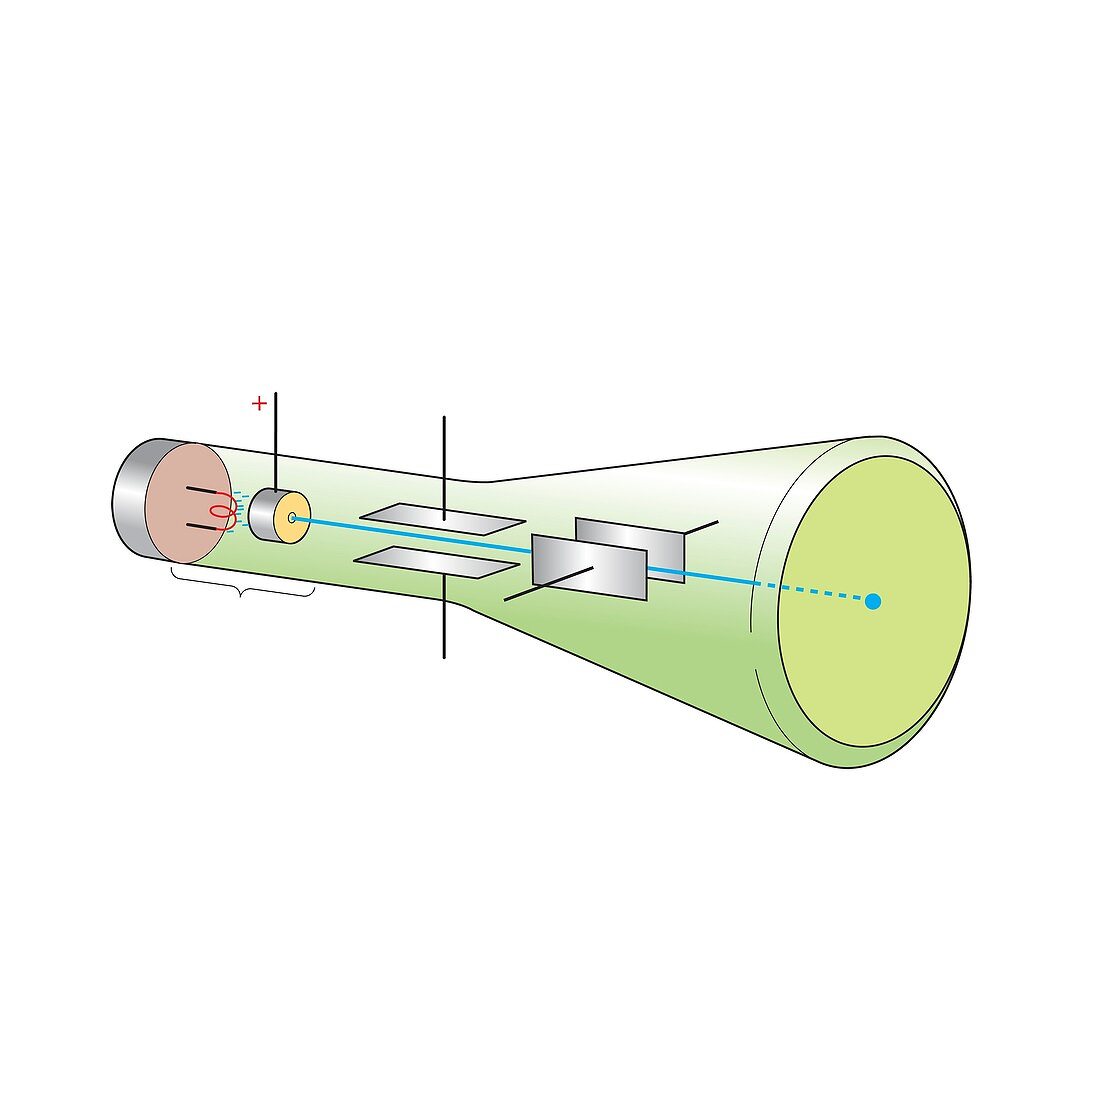 Cathode ray tube, illustration